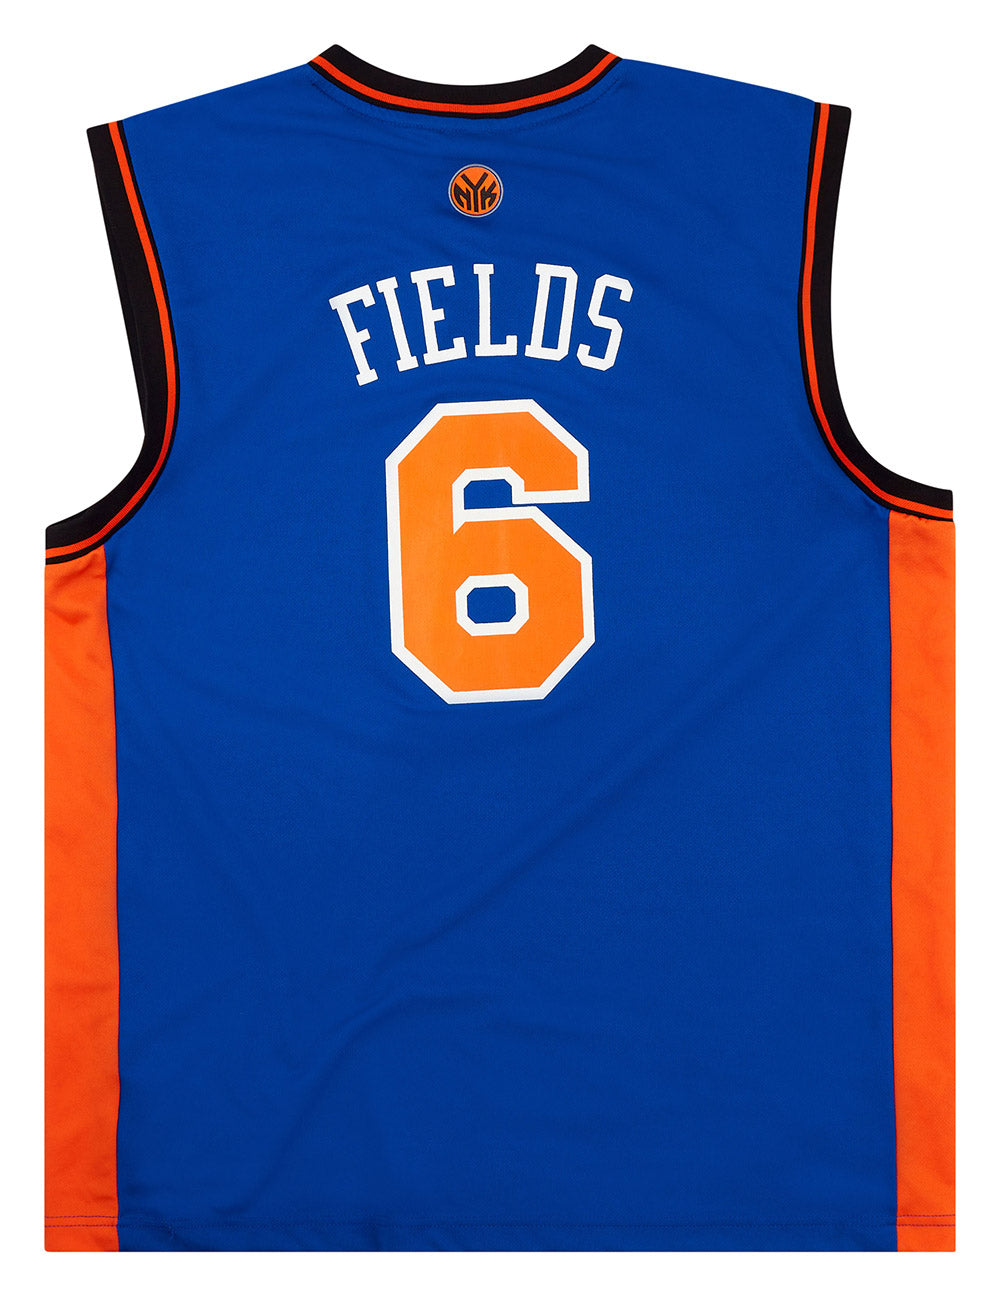 Retro-inspired New York Knicks Concept Jerseys : r/NYKnicks